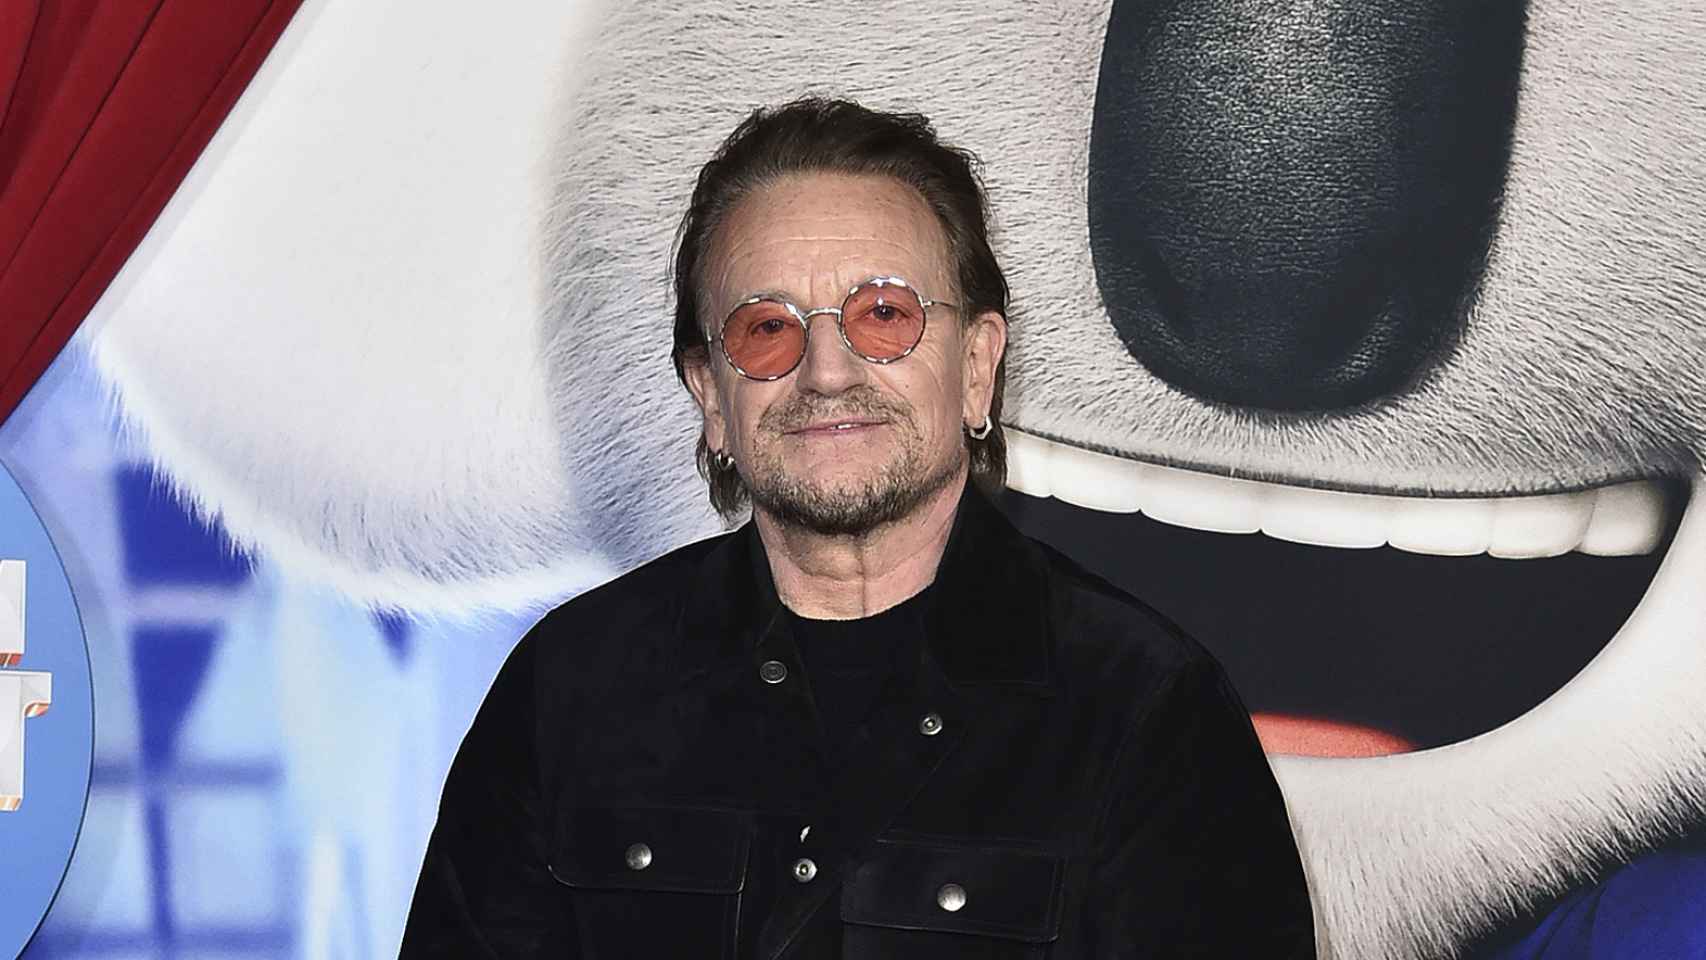 El cantante Bono de U2 en una aparición reciente.